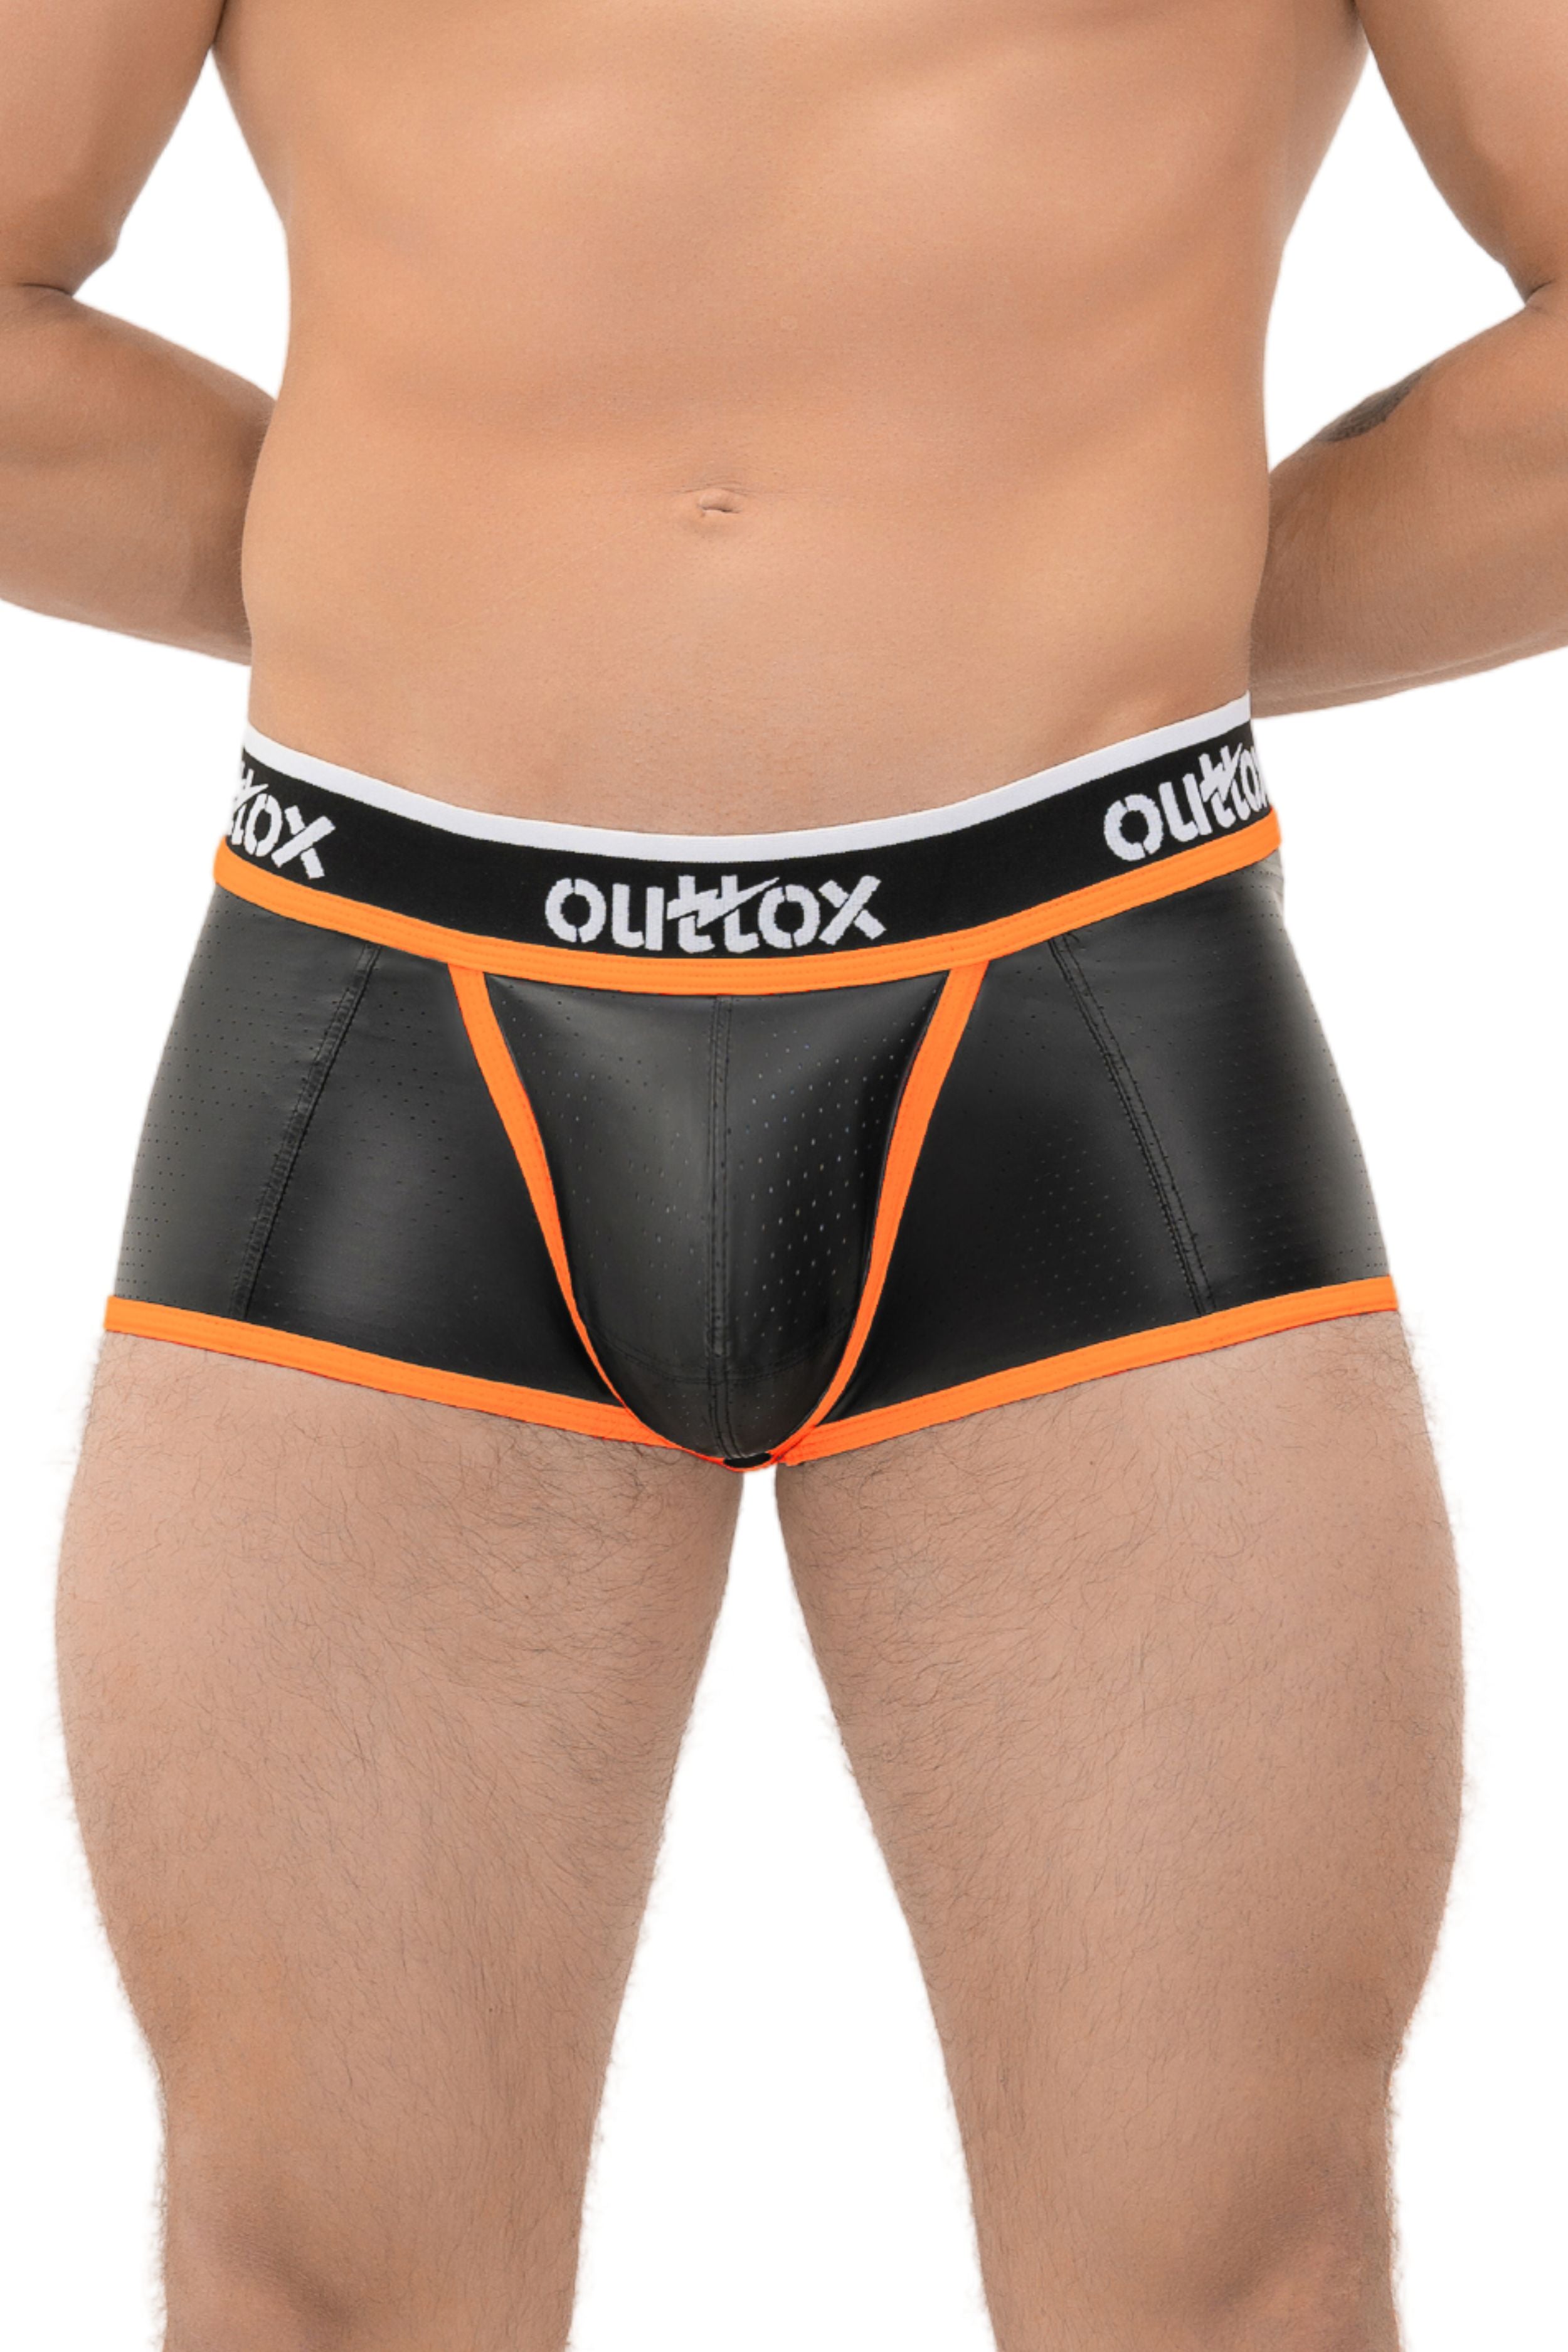 Outtox. Shorts mit offenem Rücken und Druckknopf-Codpiece. Schwarz+Orange